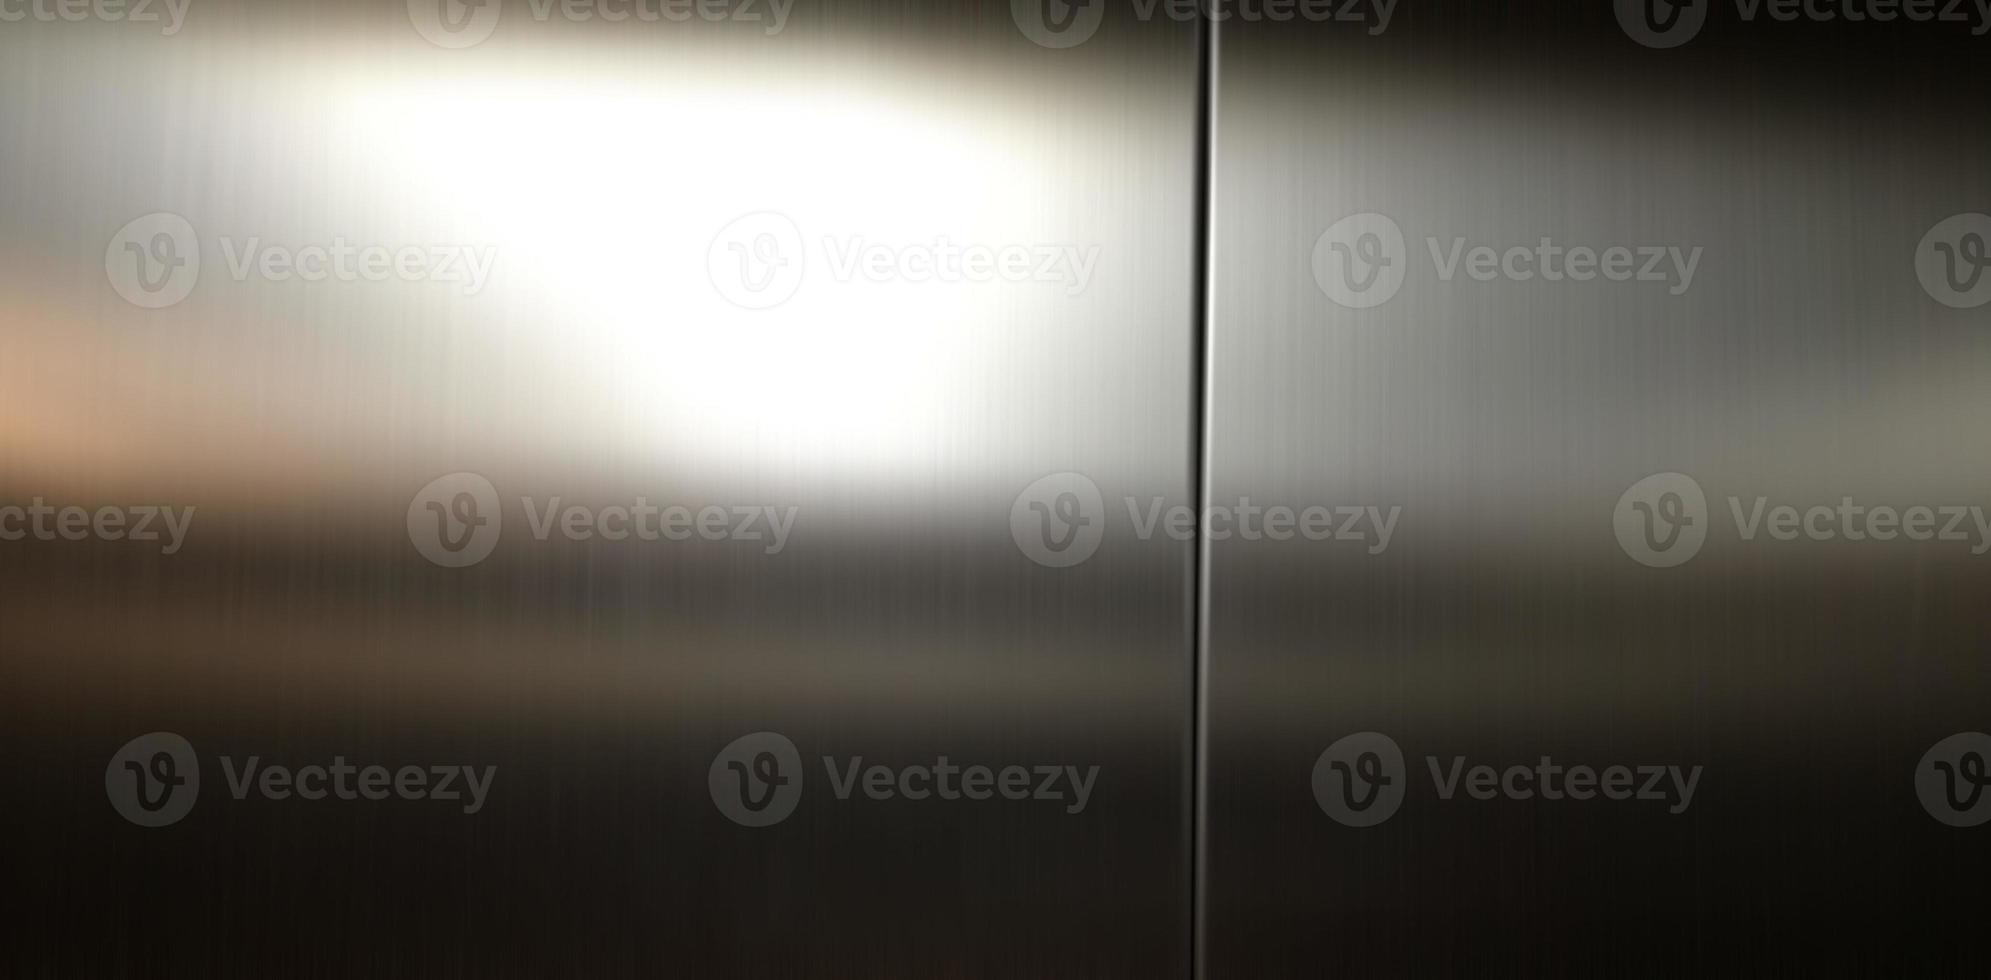 grande feuille d'acier inoxydable avec lumière frappant la surface pour le fond, à l'intérieur de l'ascenseur de passagers, réflexion de la lumière sur une texture métallique brillante, fond en acier inoxydable. photo